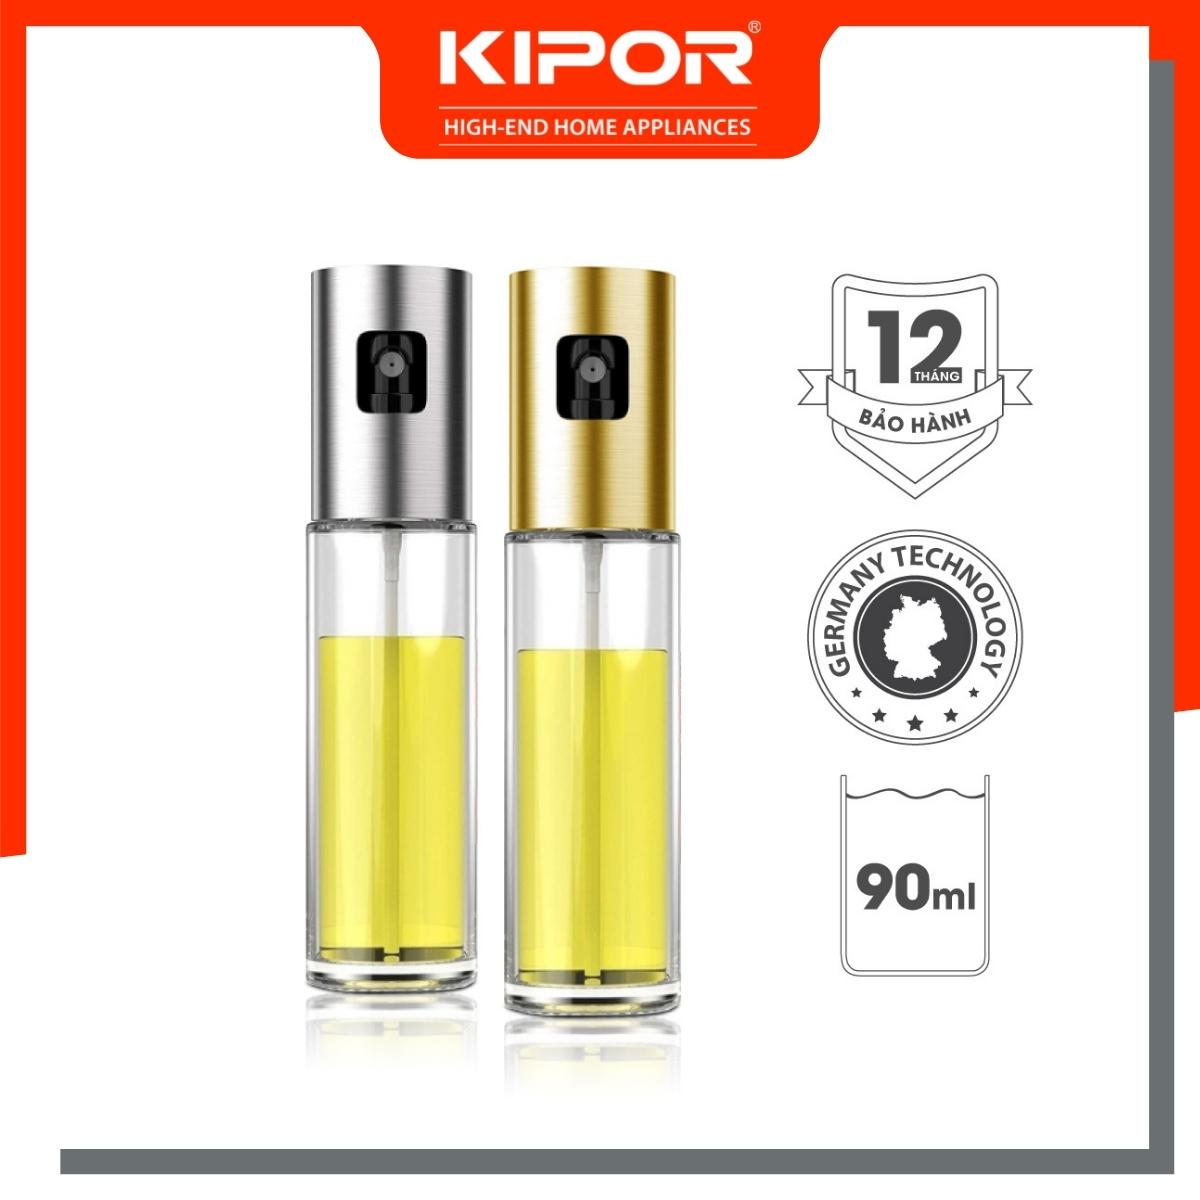 Bình xịt dầu ăn phun sương cầm tay KIPOR KP-XD01 - Chai thuỷ tinh cao cấp - Tiện lợi, dễ sử dụng